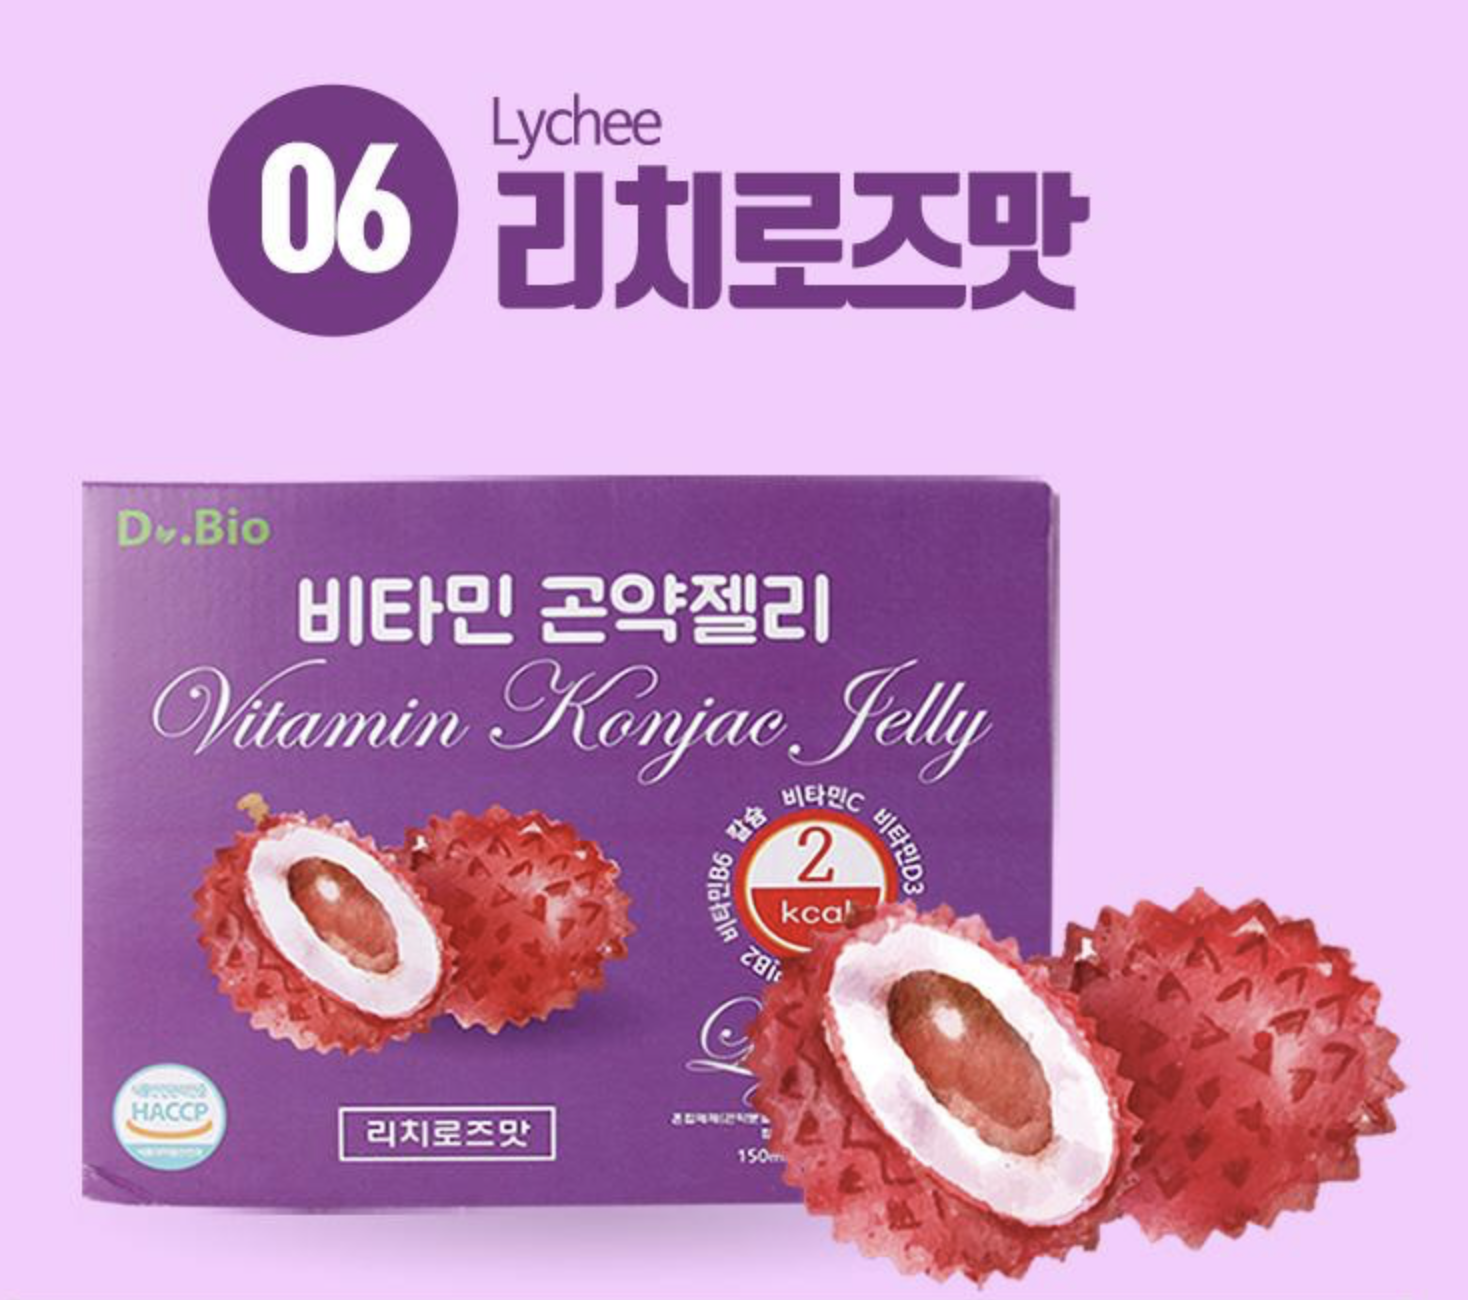 韓國 Dr.Bio 維他命2卡路里蒟蒻啫喱(荔枝味) 一盒10包